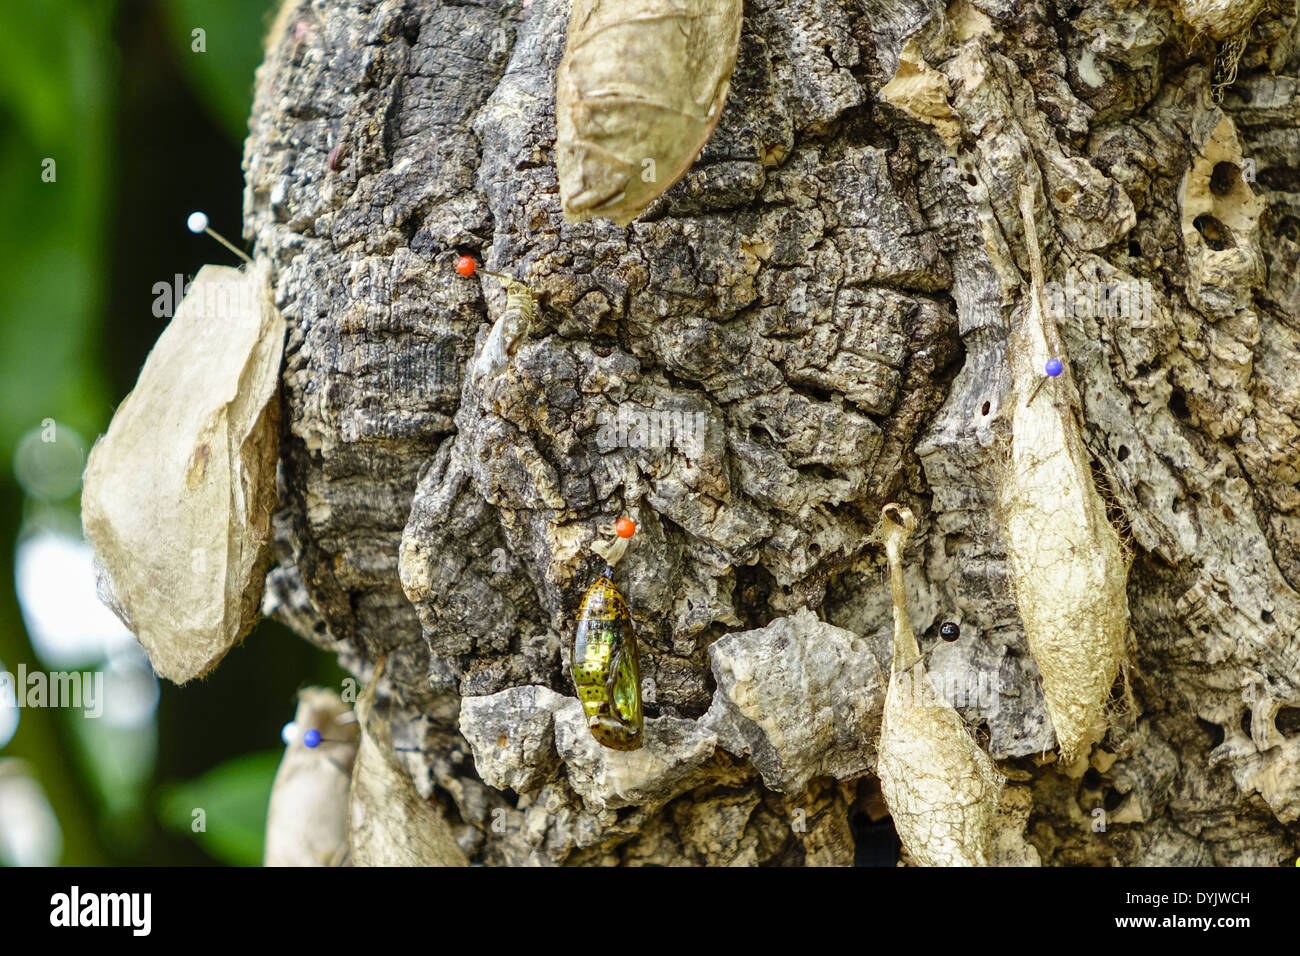 Puppen von Schmetterlingen un einem Baumstamm Foto Stock